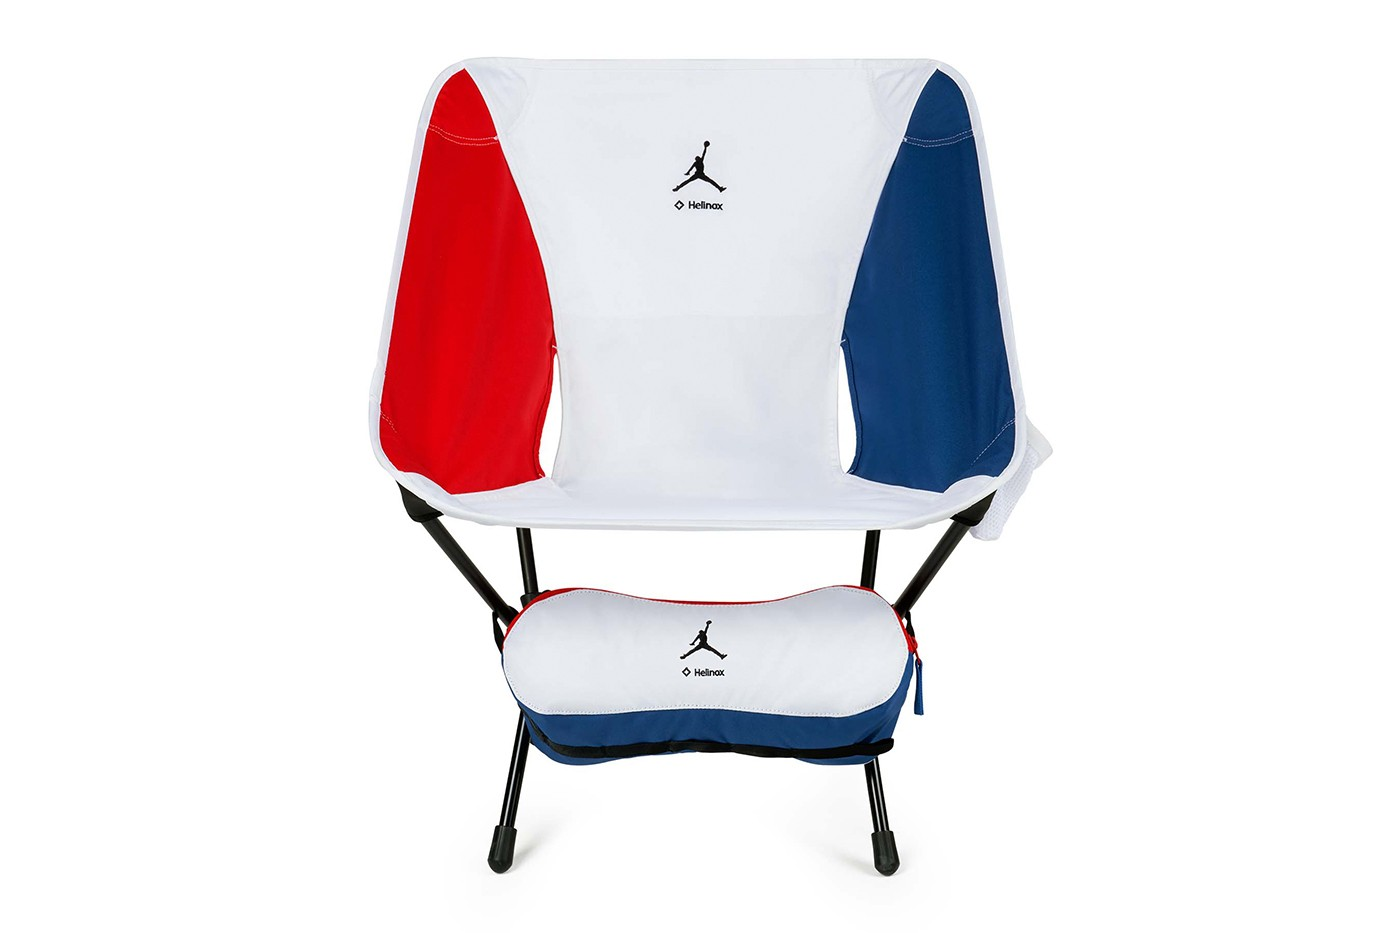 Jordan Brand x Helinox Chair One